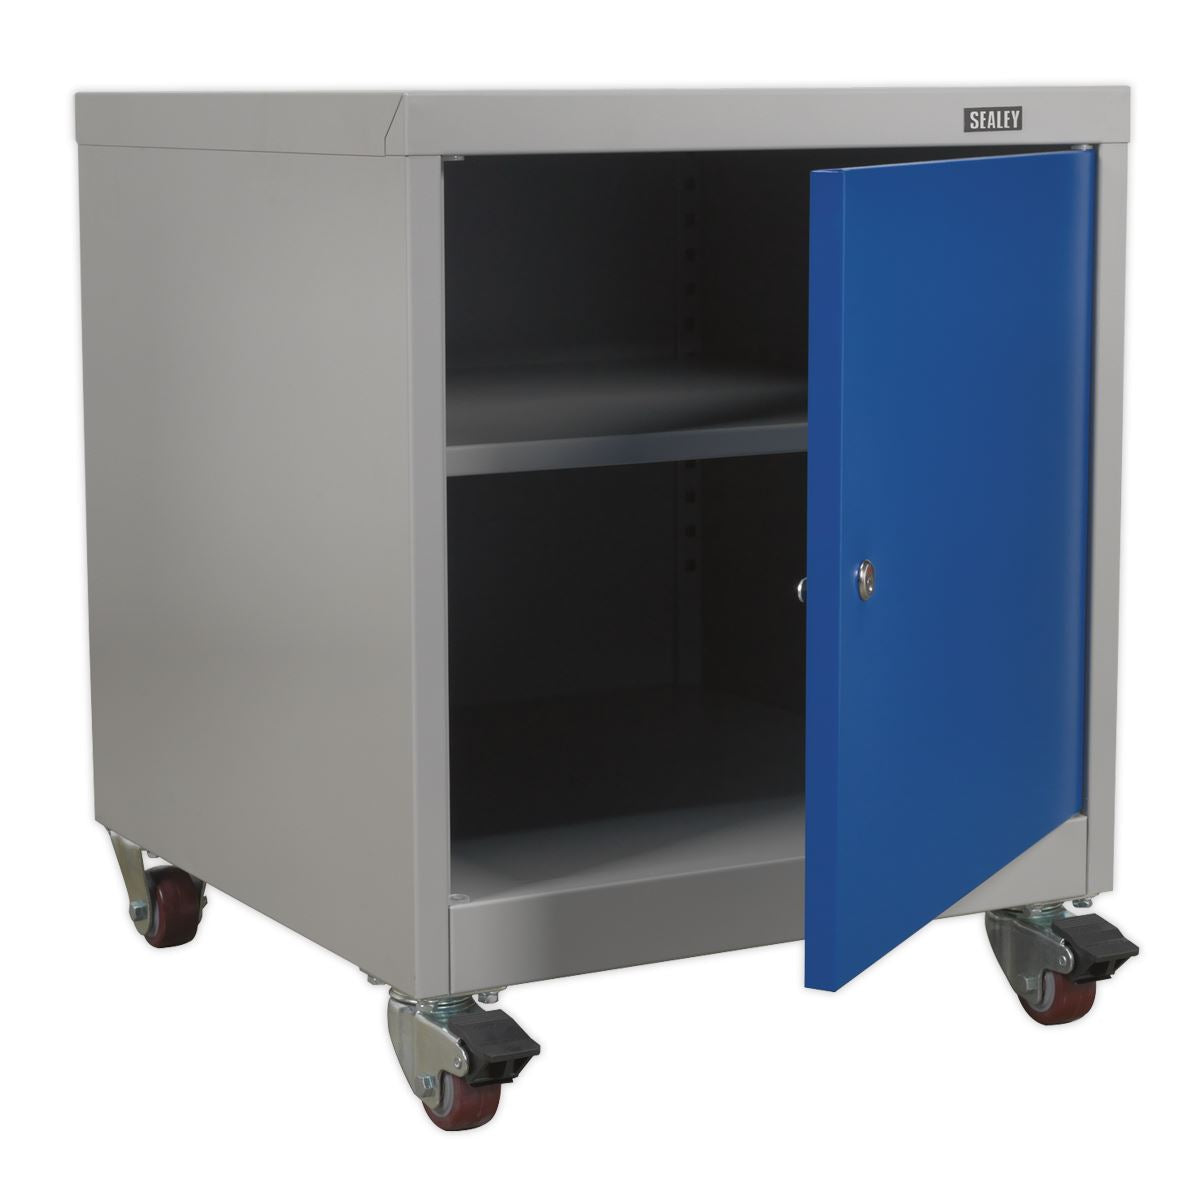 Sealey Premier Industrial Mobile Industrial Cabinet 1 Shelf Locker